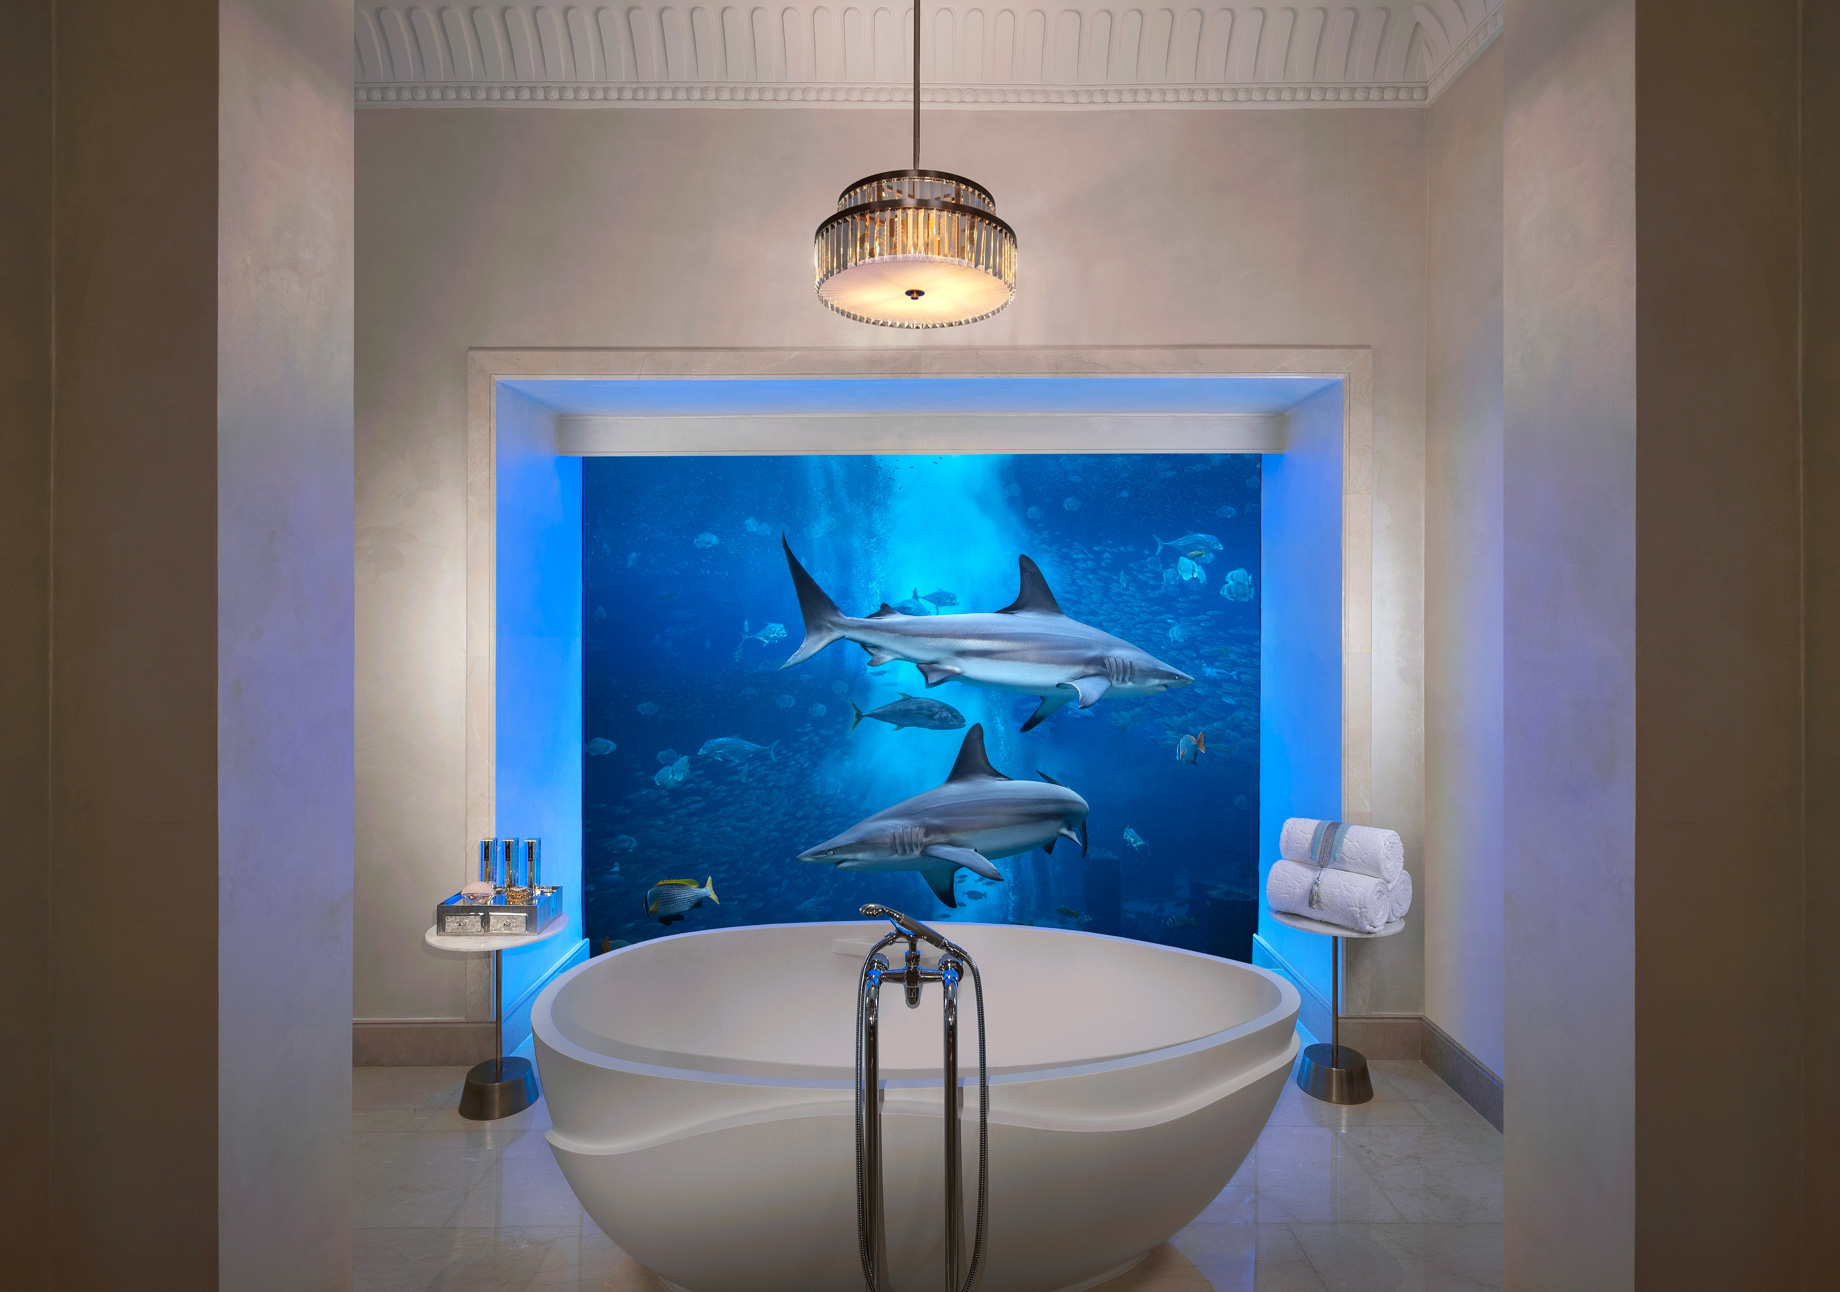 Atlantis The Palm Resort – Crescent Rd, Dubai, UAE – Underwater Suite Bathroom